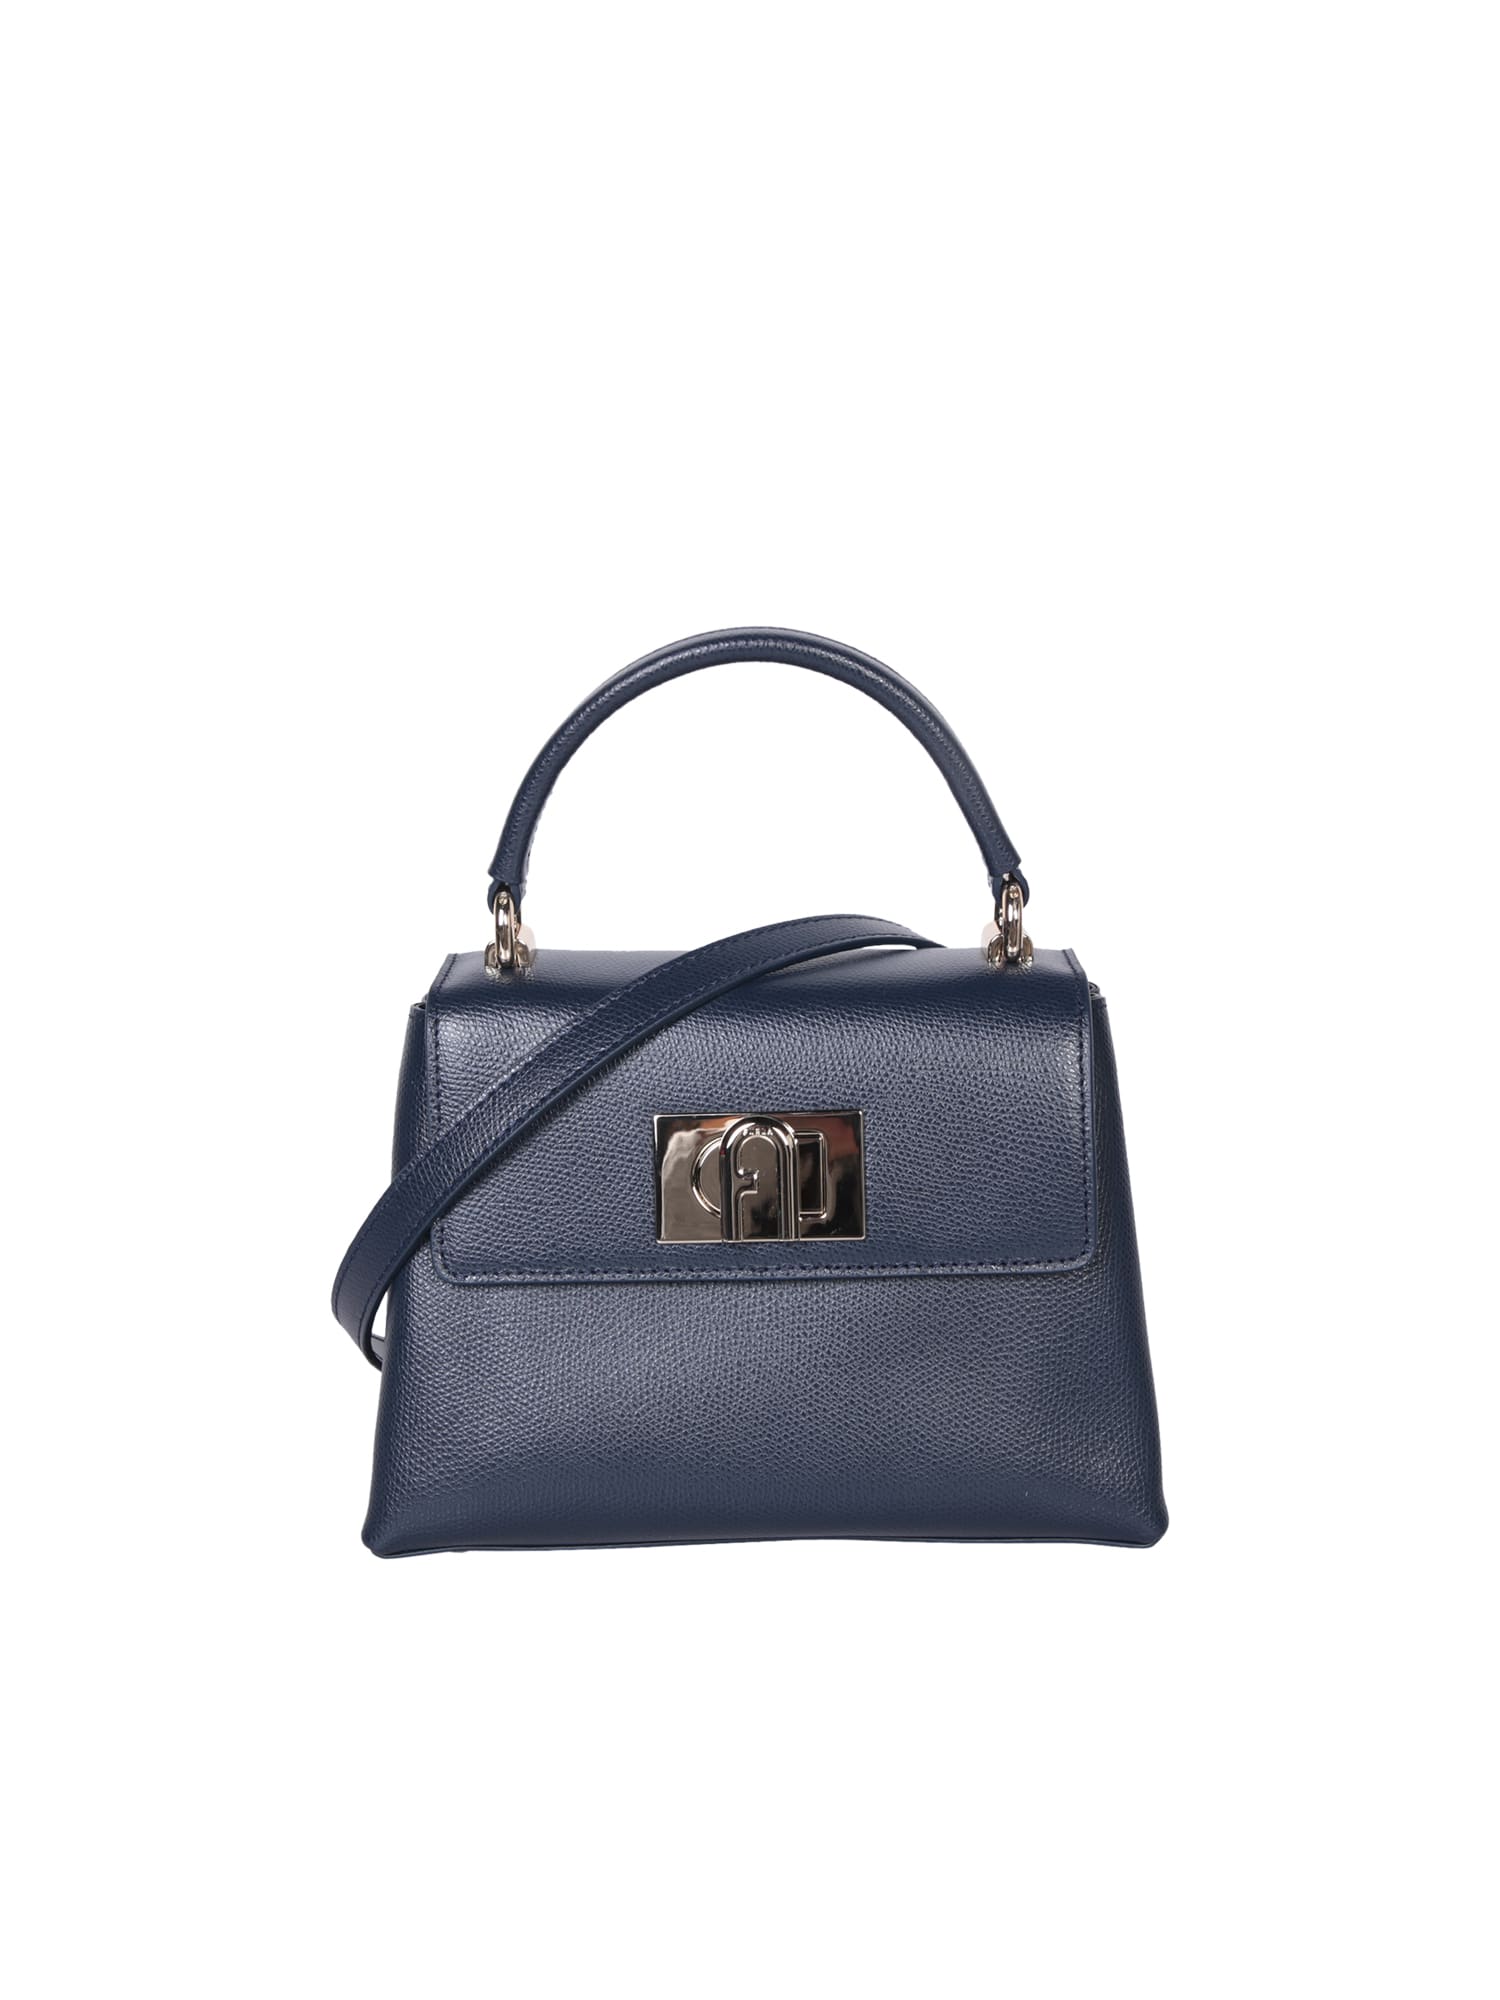 Furla 1927 Mini Top Handle Bag In Blue